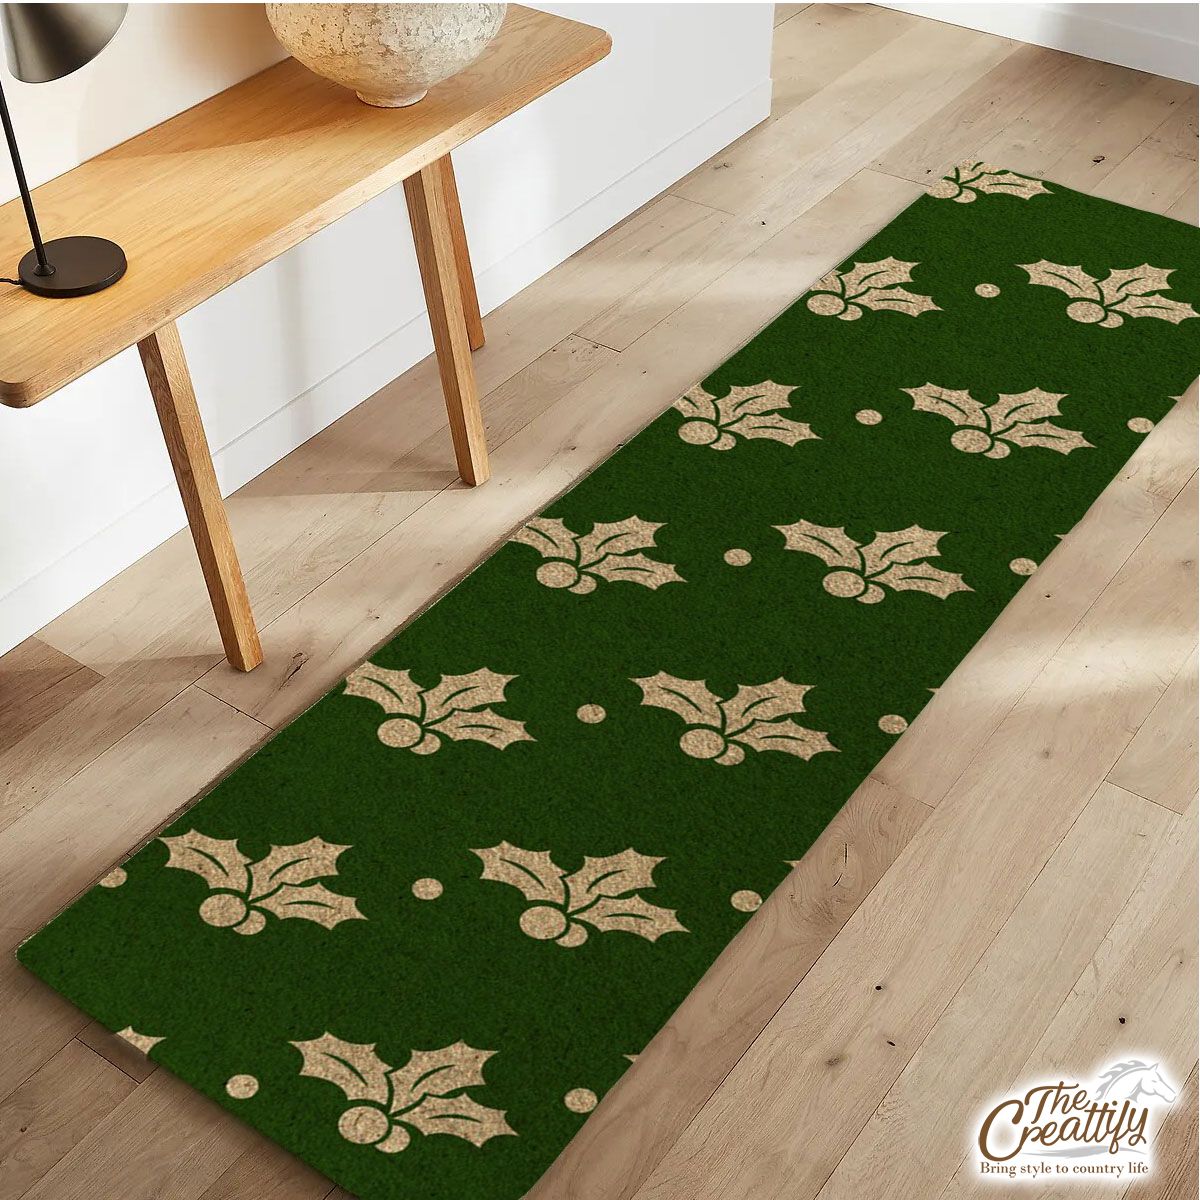 Oak Leaf Holly, Holly Leaf Runner Carpet